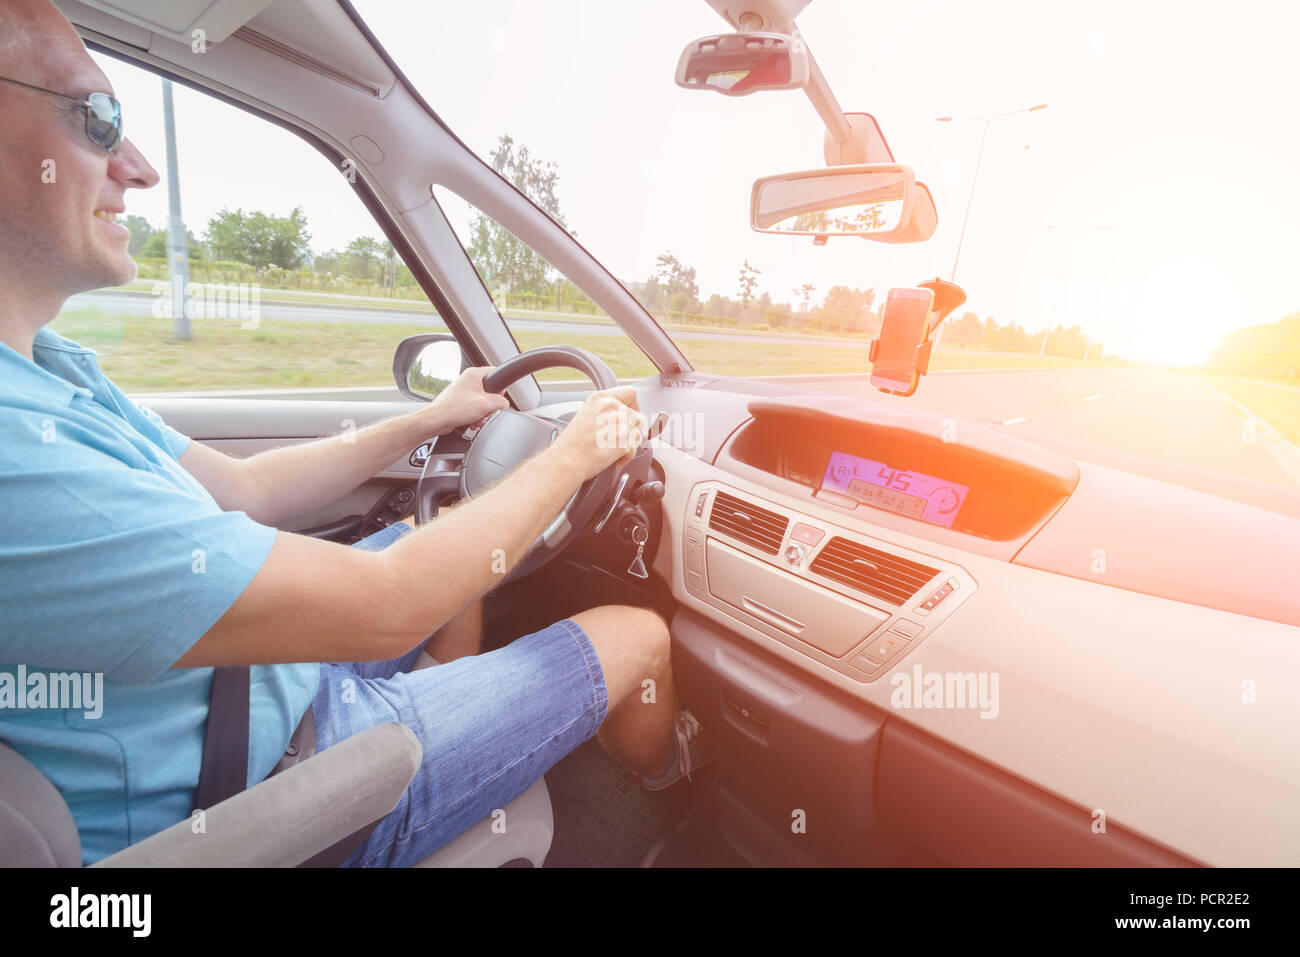 Auto fahren - Beifahrersitz anzeigen. Die Hände am Lenkrad Stockfotografie  - Alamy